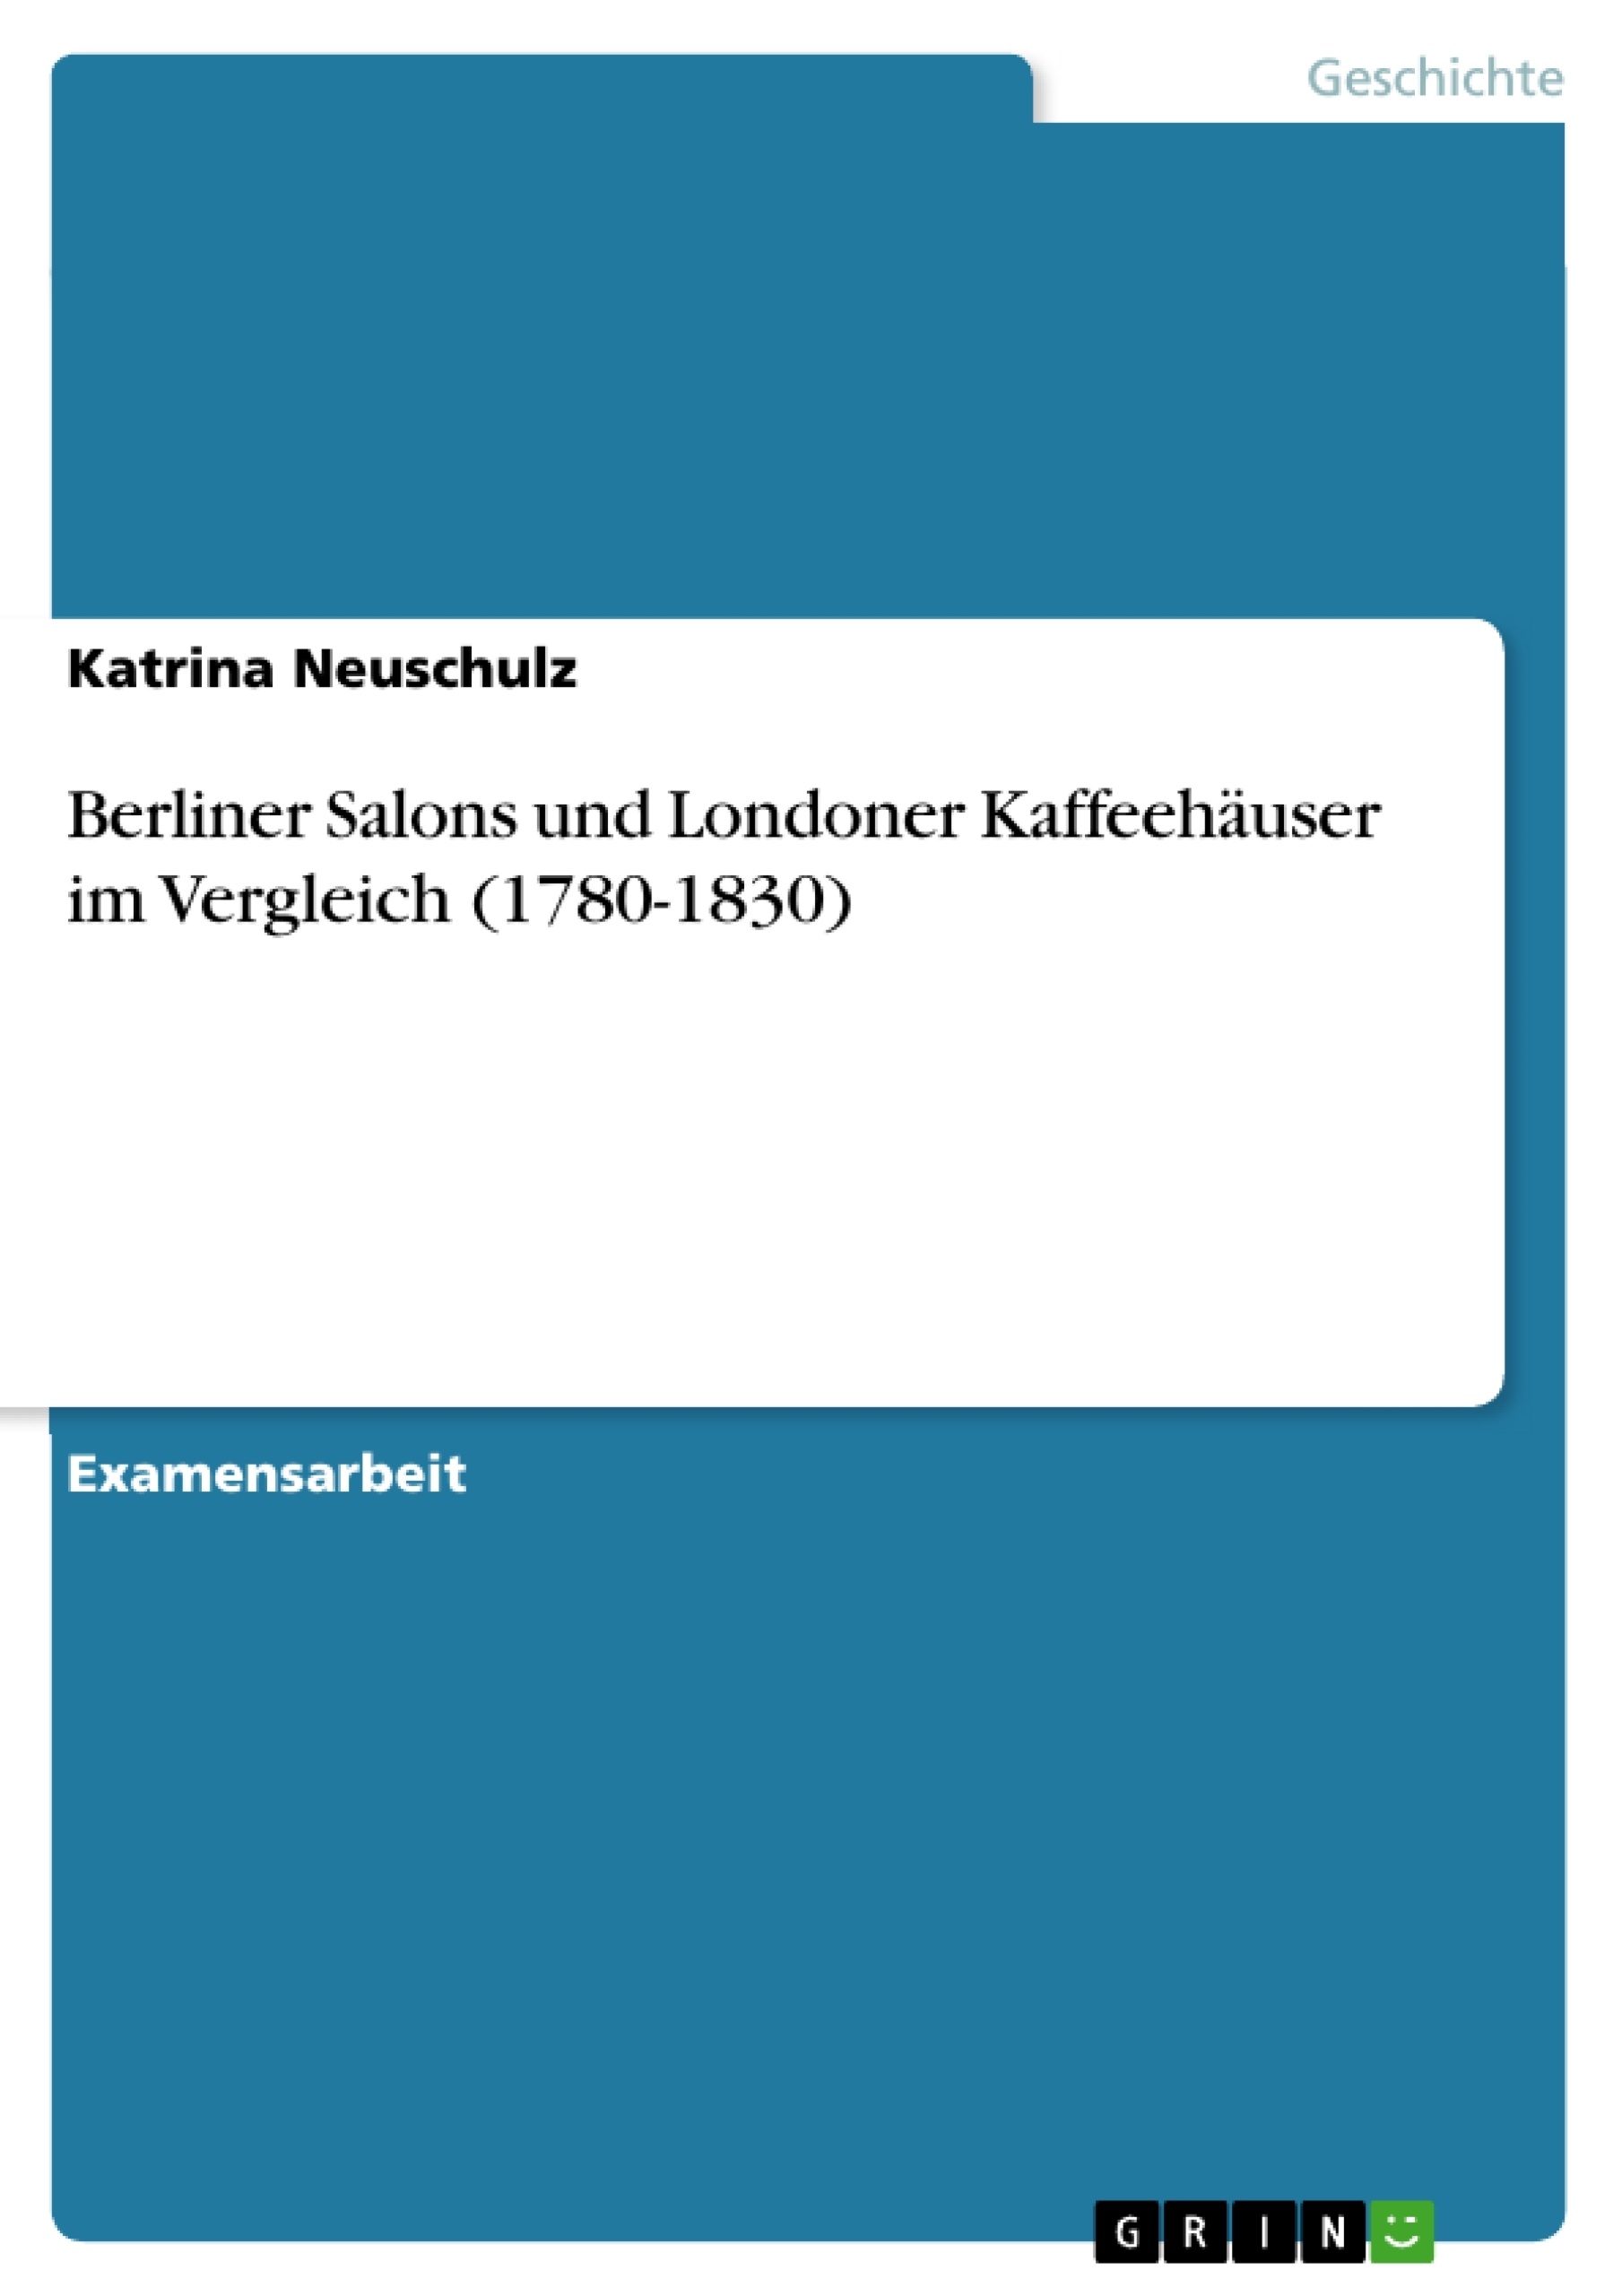 Título: Berliner Salons und Londoner Kaffeehäuser im Vergleich (1780-1830)